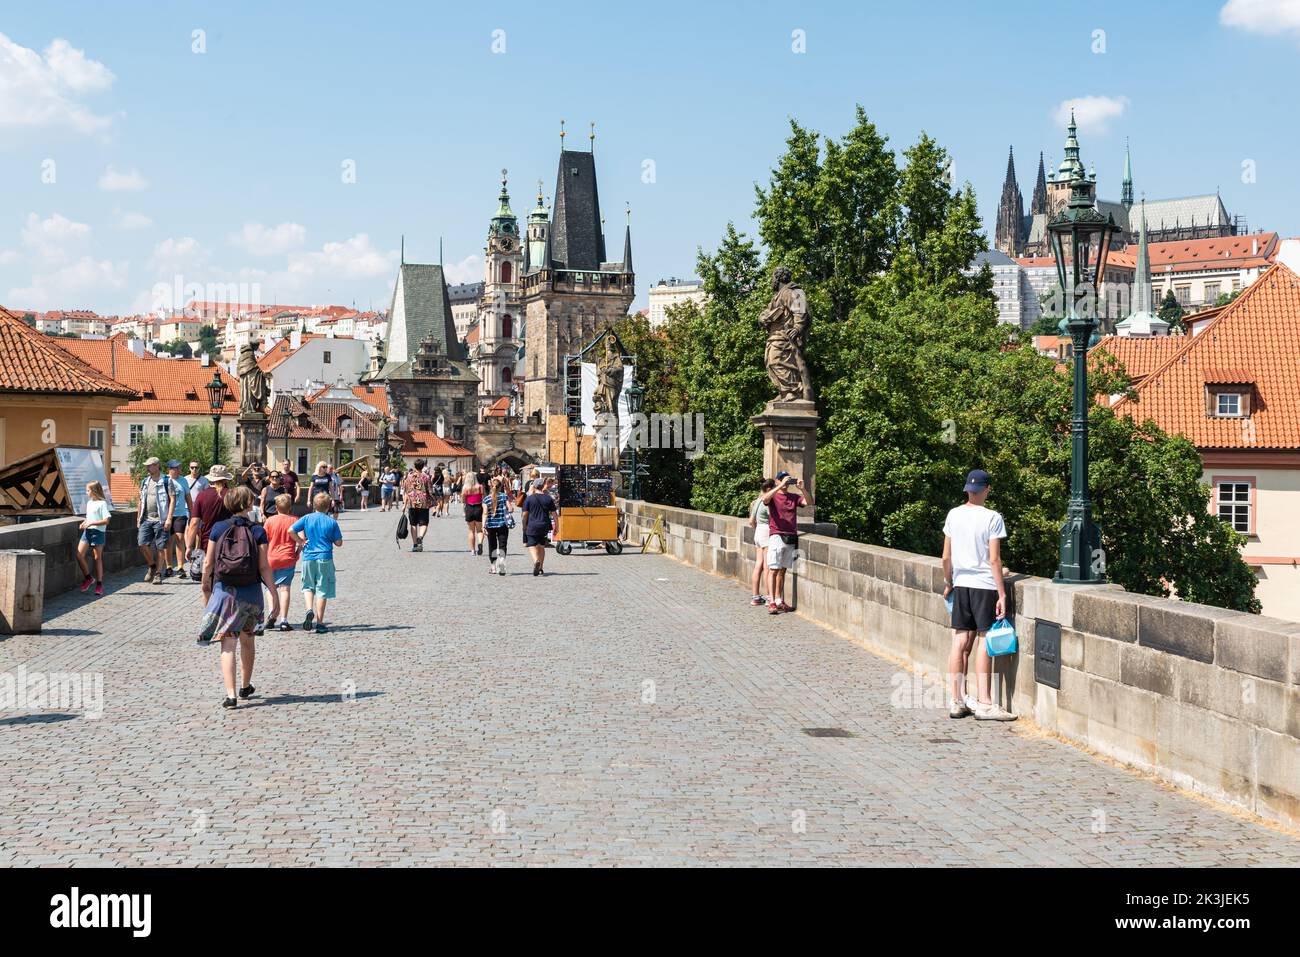 Praga - Repubblica Ceca - 08 01 2020 turisti a piedi sul ponte Carlo nel centro storico in una calda giornata di sole Foto Stock